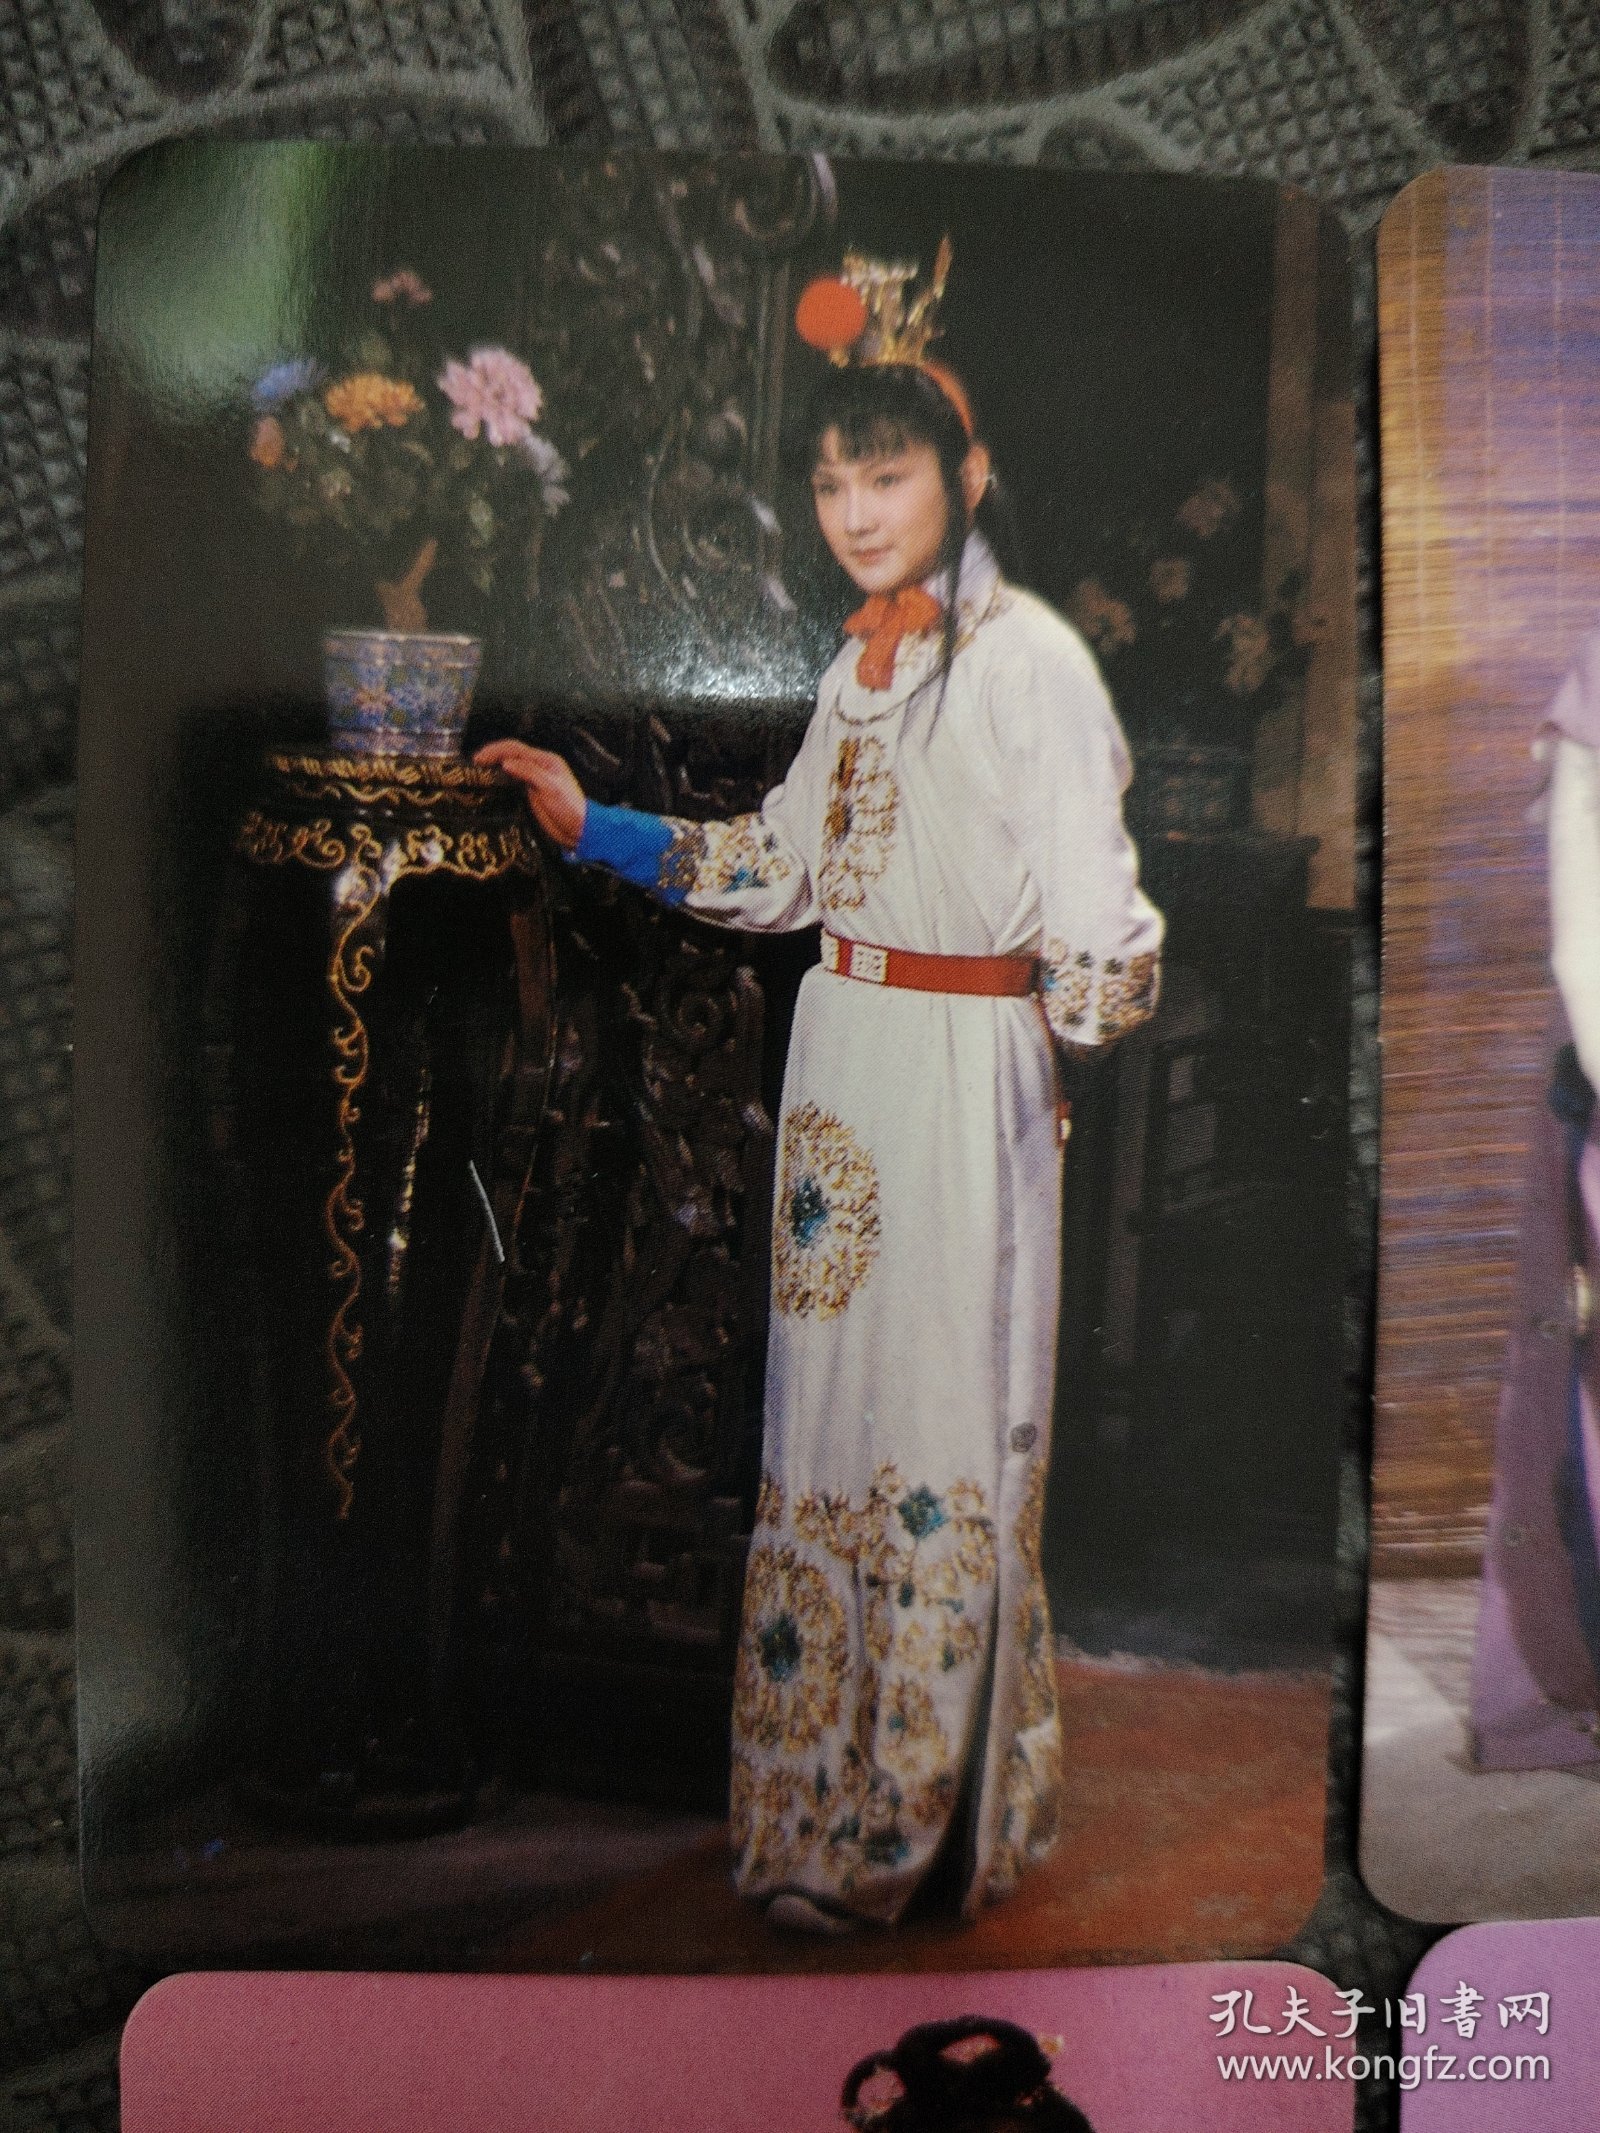 1986年中国旅游出版社《红楼梦》剧照年历卡一套品相全新